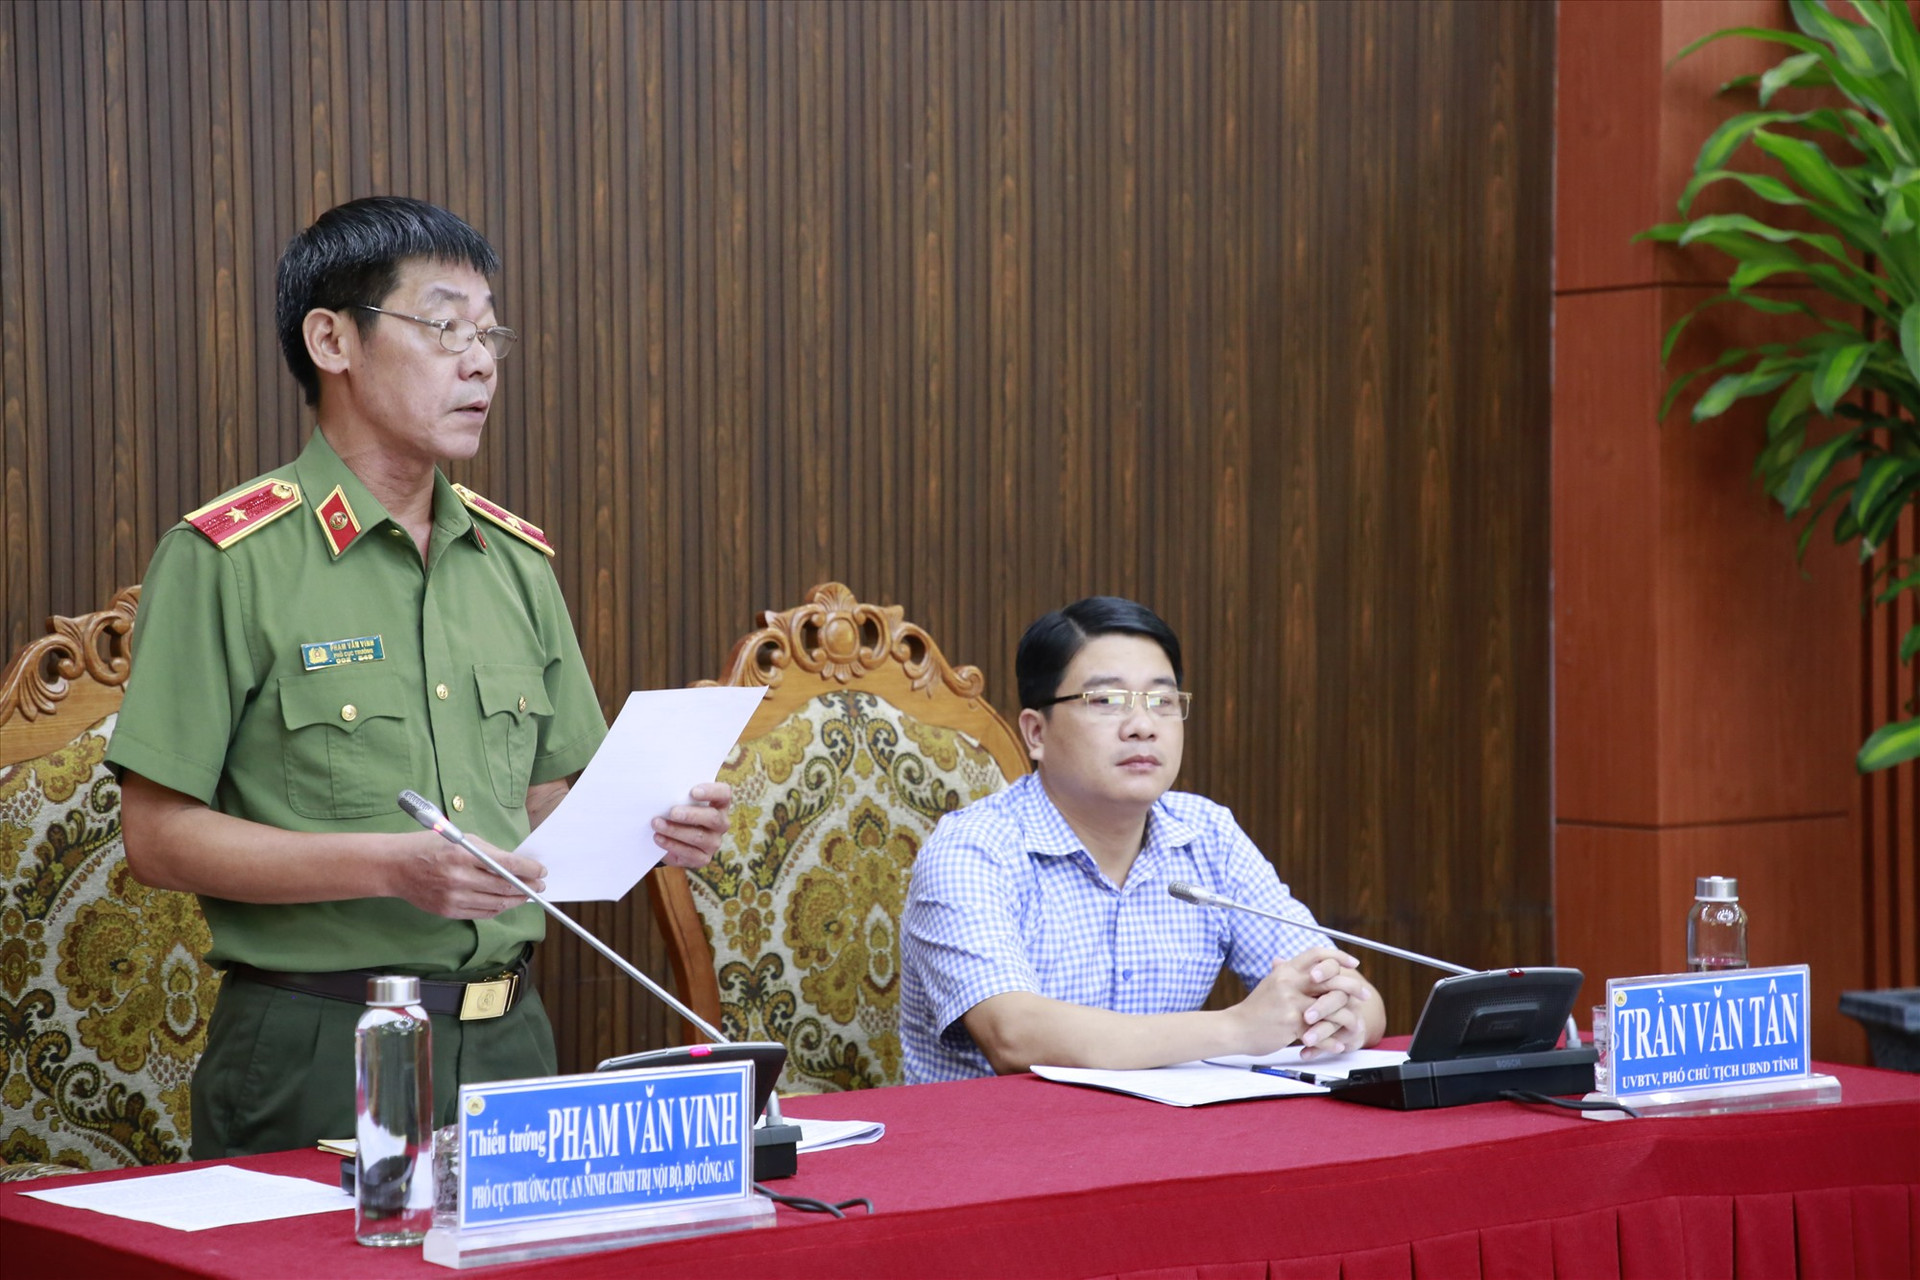 Thiếu tướng Phạm Văn Vinh phát biểu tại buổi công bố. Ảnh: T.C